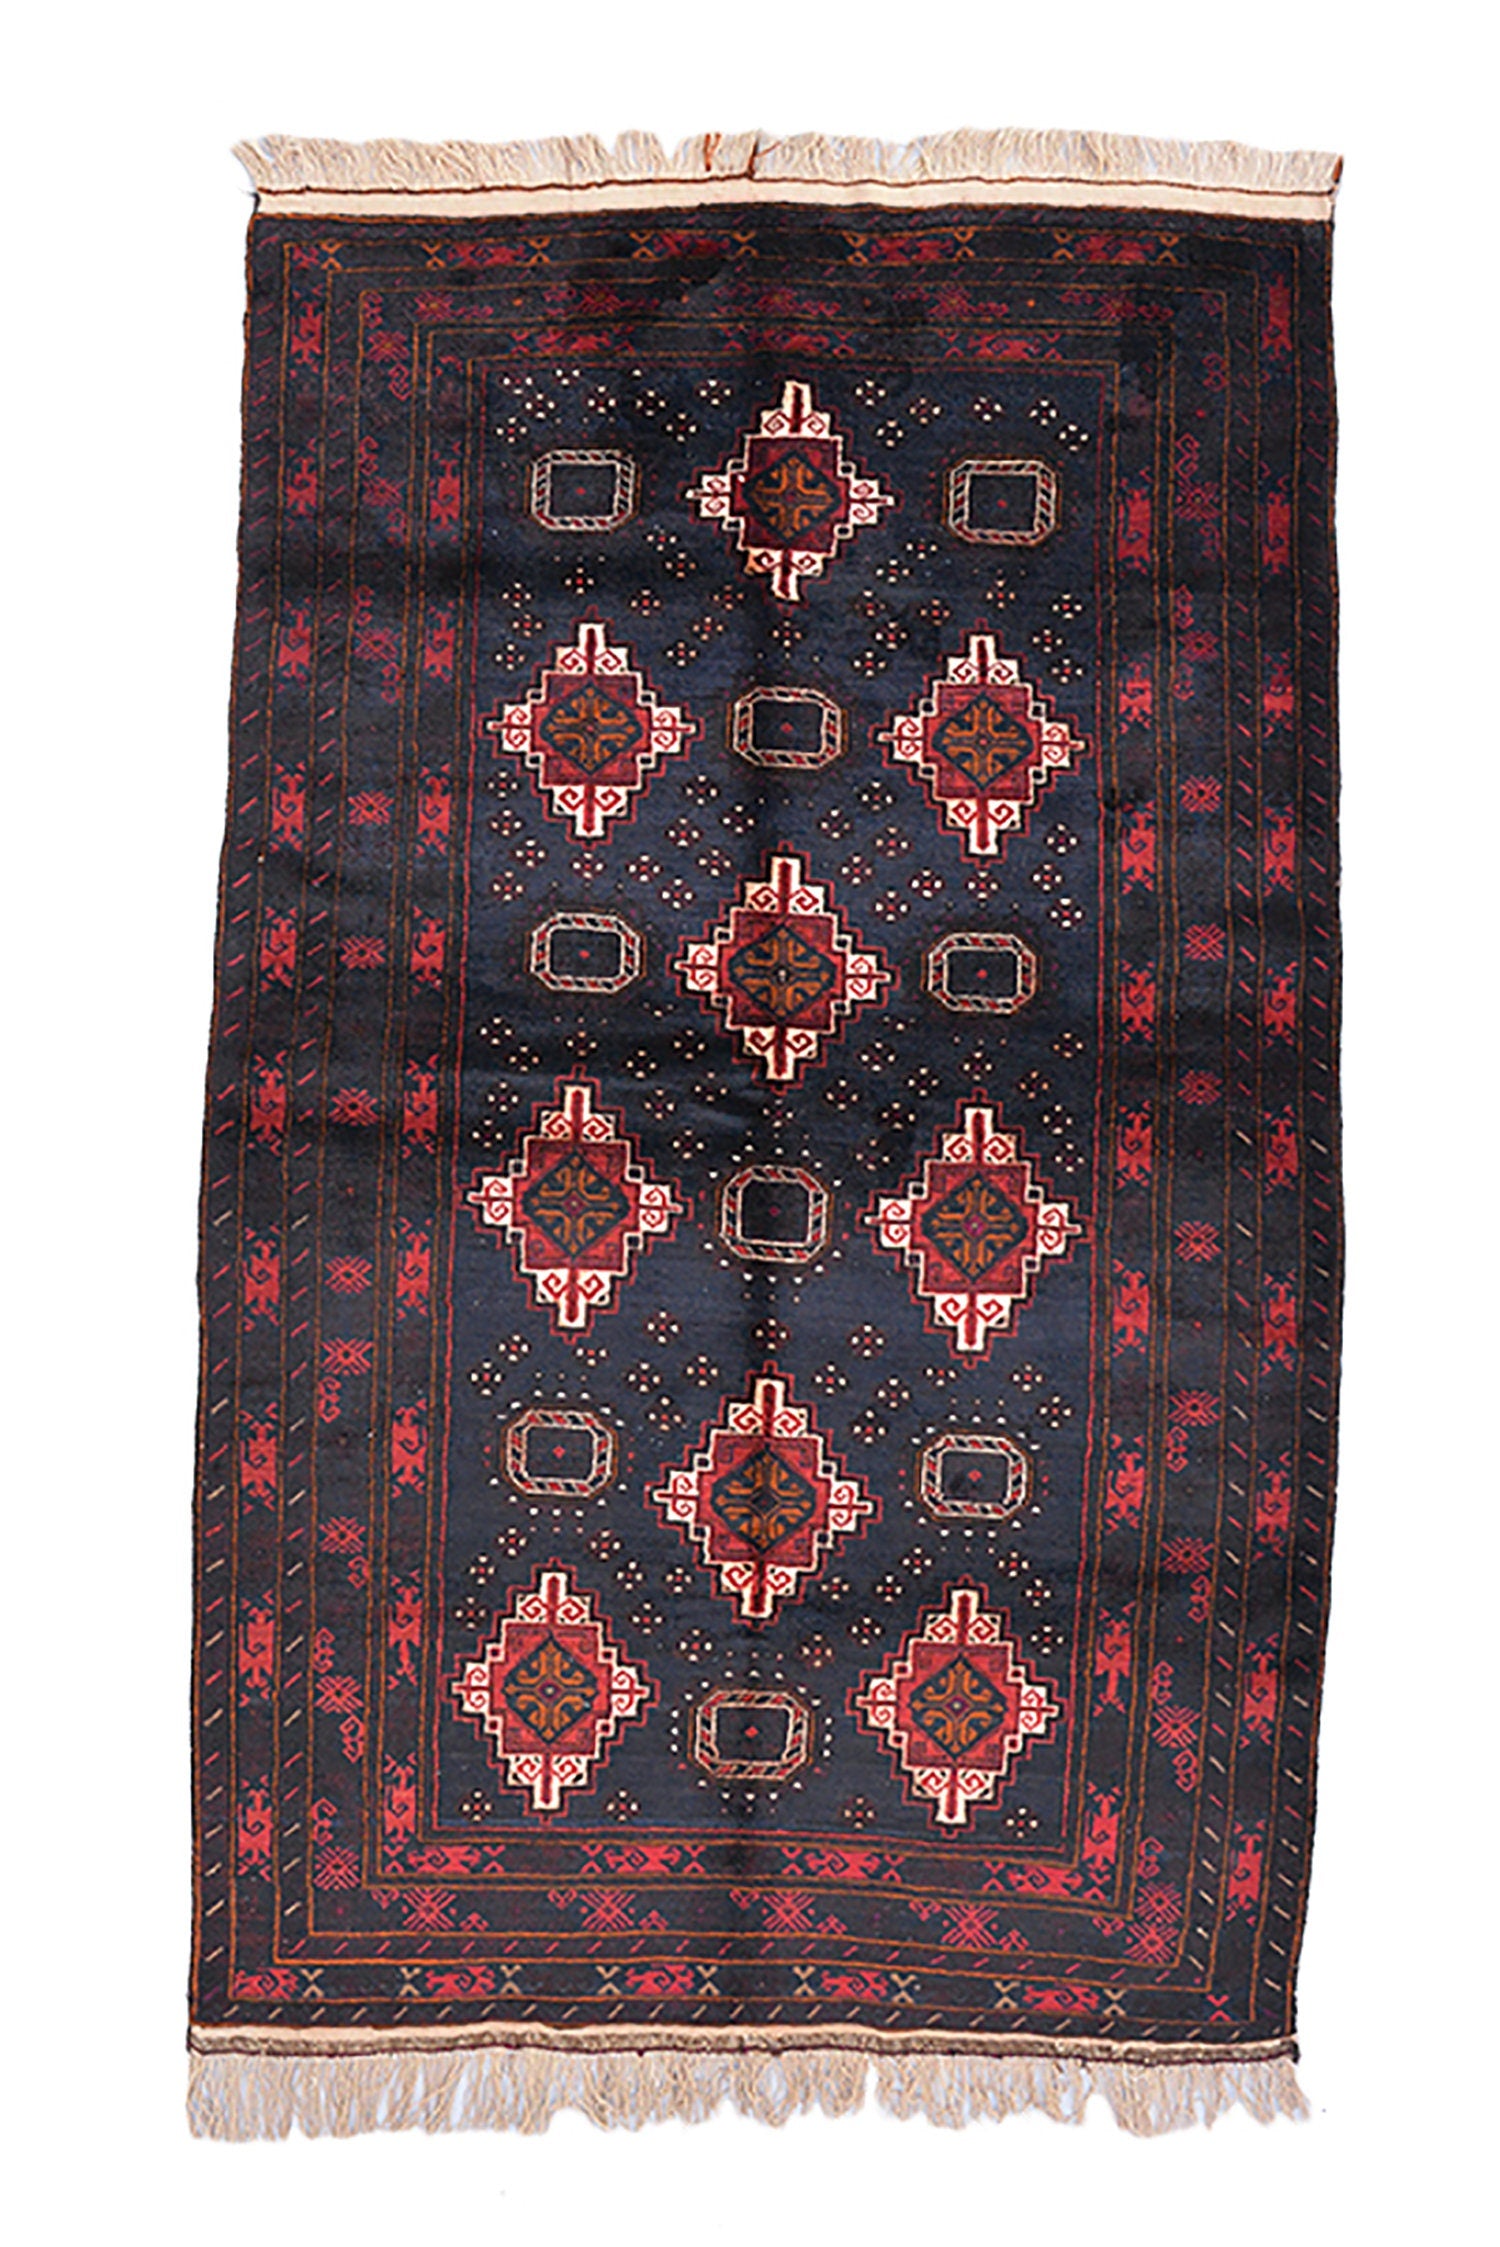 Navy Kazak Rug | 5 x 8 Rug | Blue Red Geometric Rug | Tribal Vintage Rug | Wool Area Rug